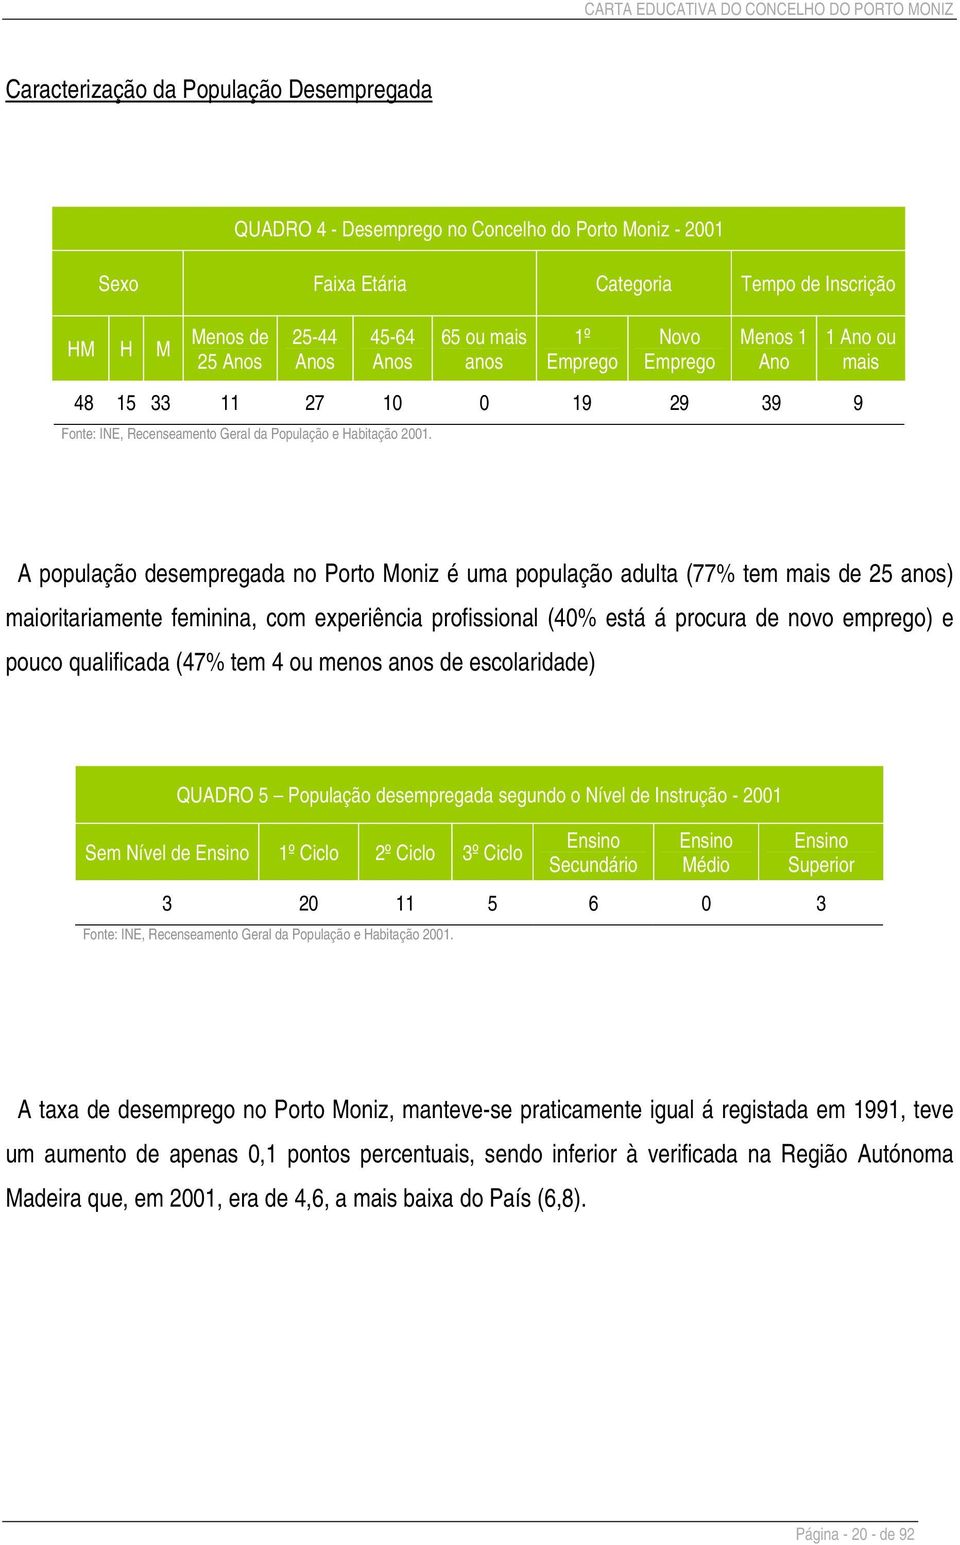 1 Ano ou mais A população desempregada no Porto Moniz é uma população adulta (77% tem mais de 25 anos) maioritariamente feminina, com experiência profissional (40% está á procura de novo emprego) e